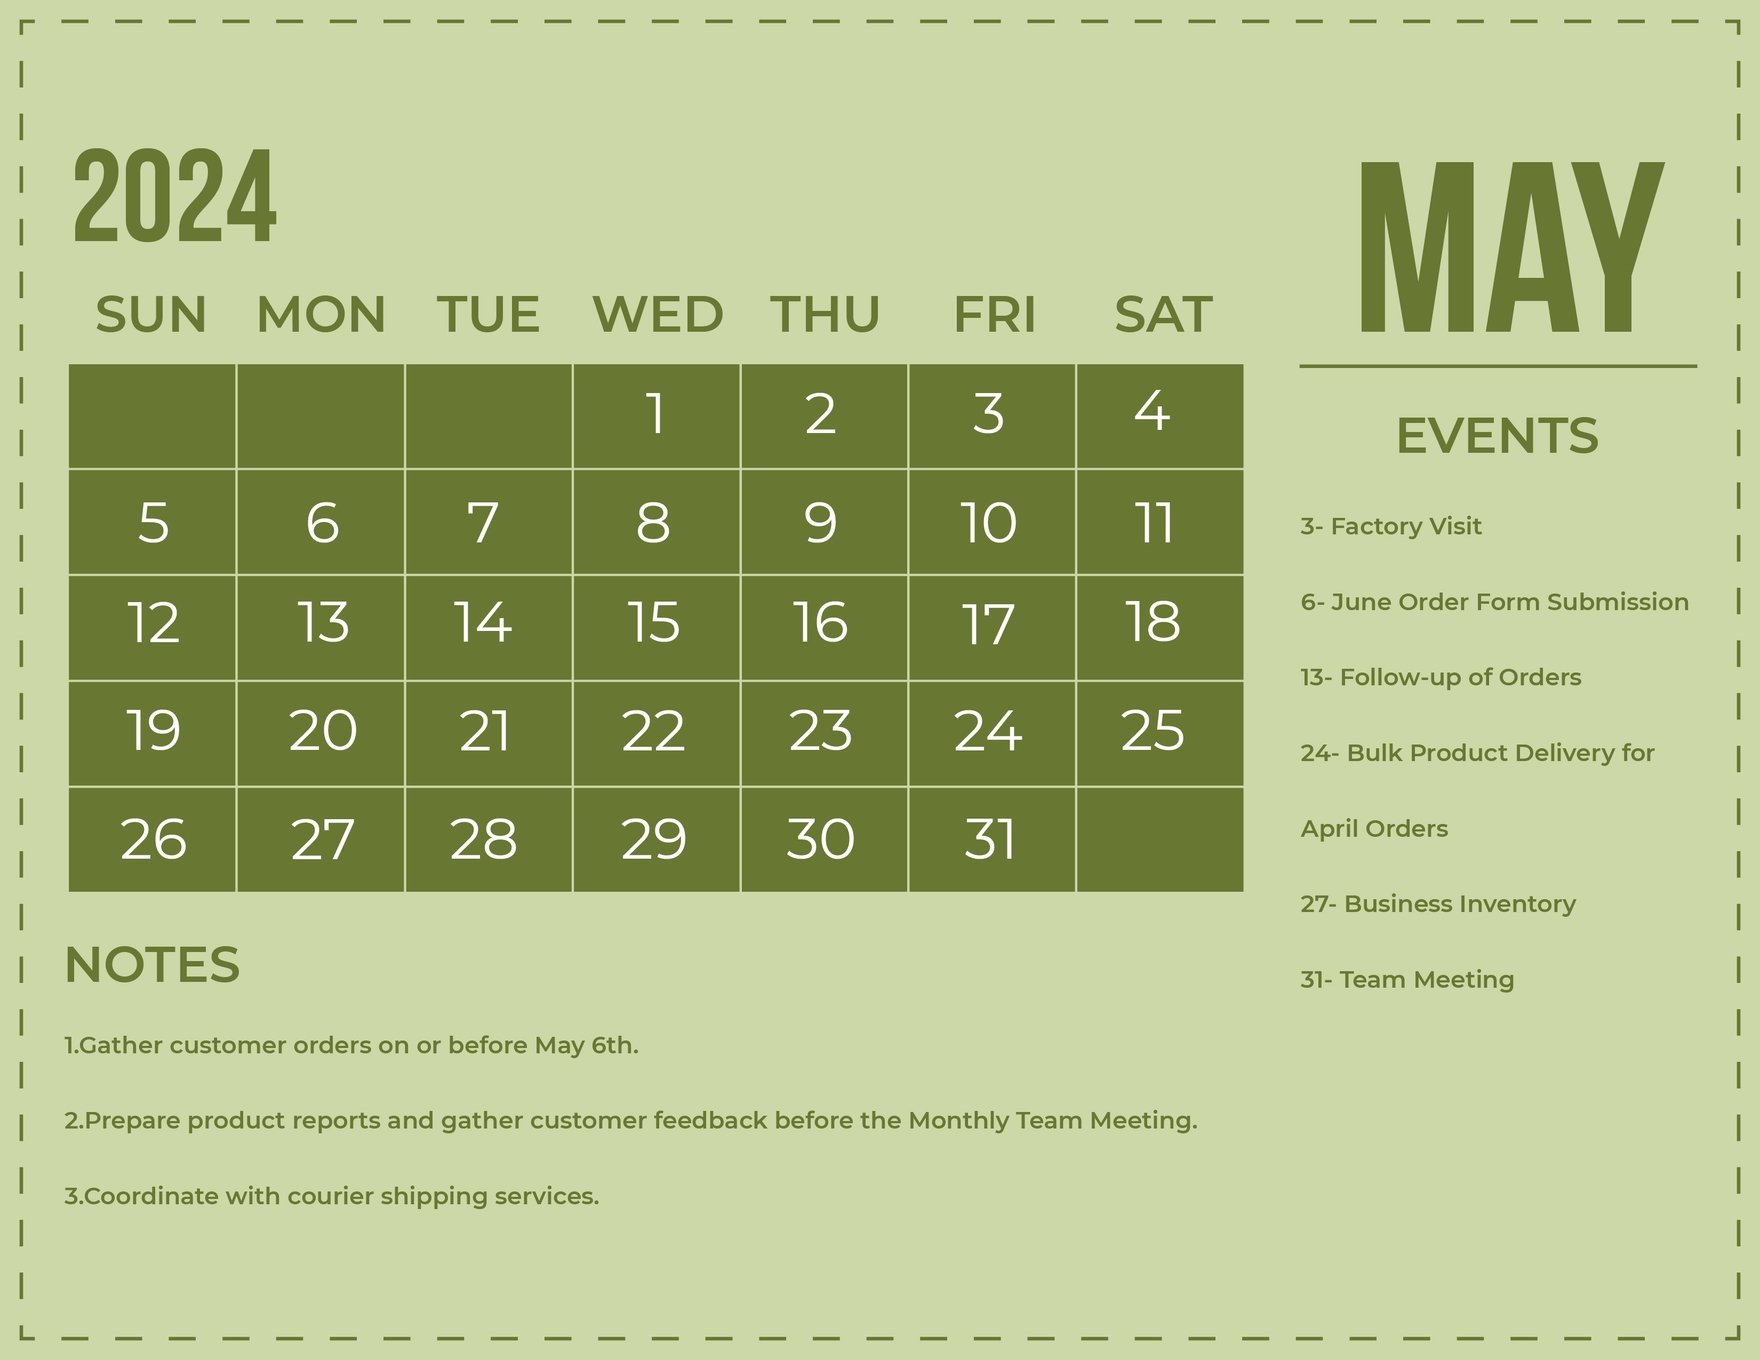 Free Simple May 2024 Calendar in Word, Illustrator, EPS, SVG, JPG